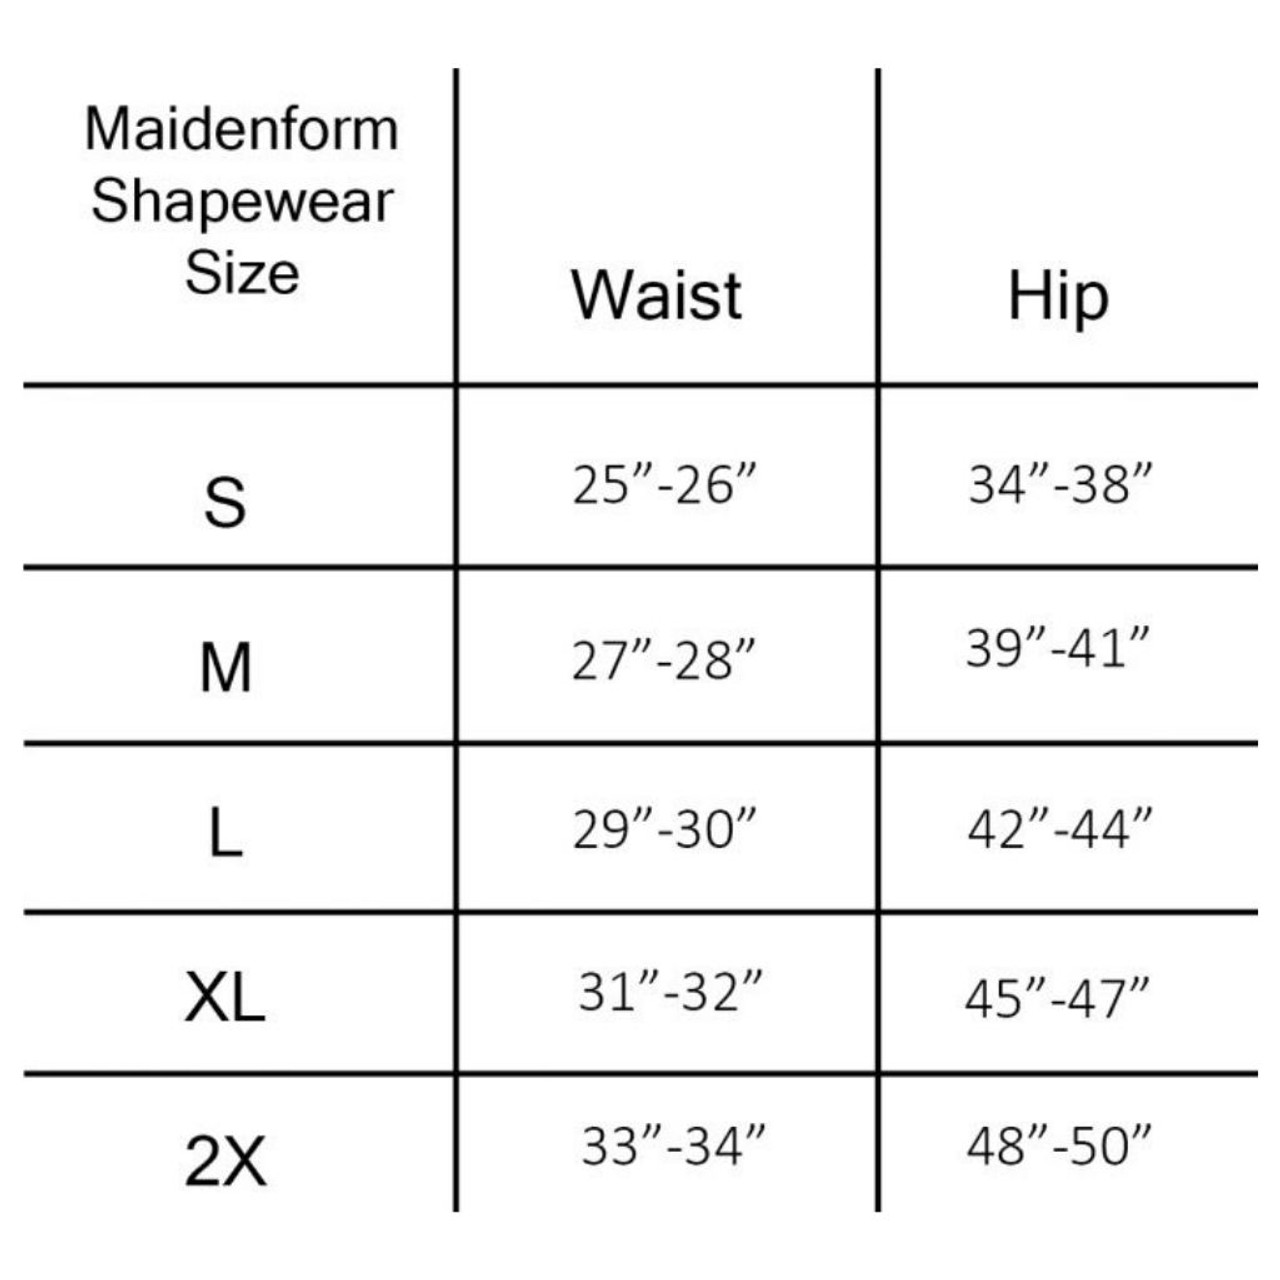 Maidenform Shapewear For Women